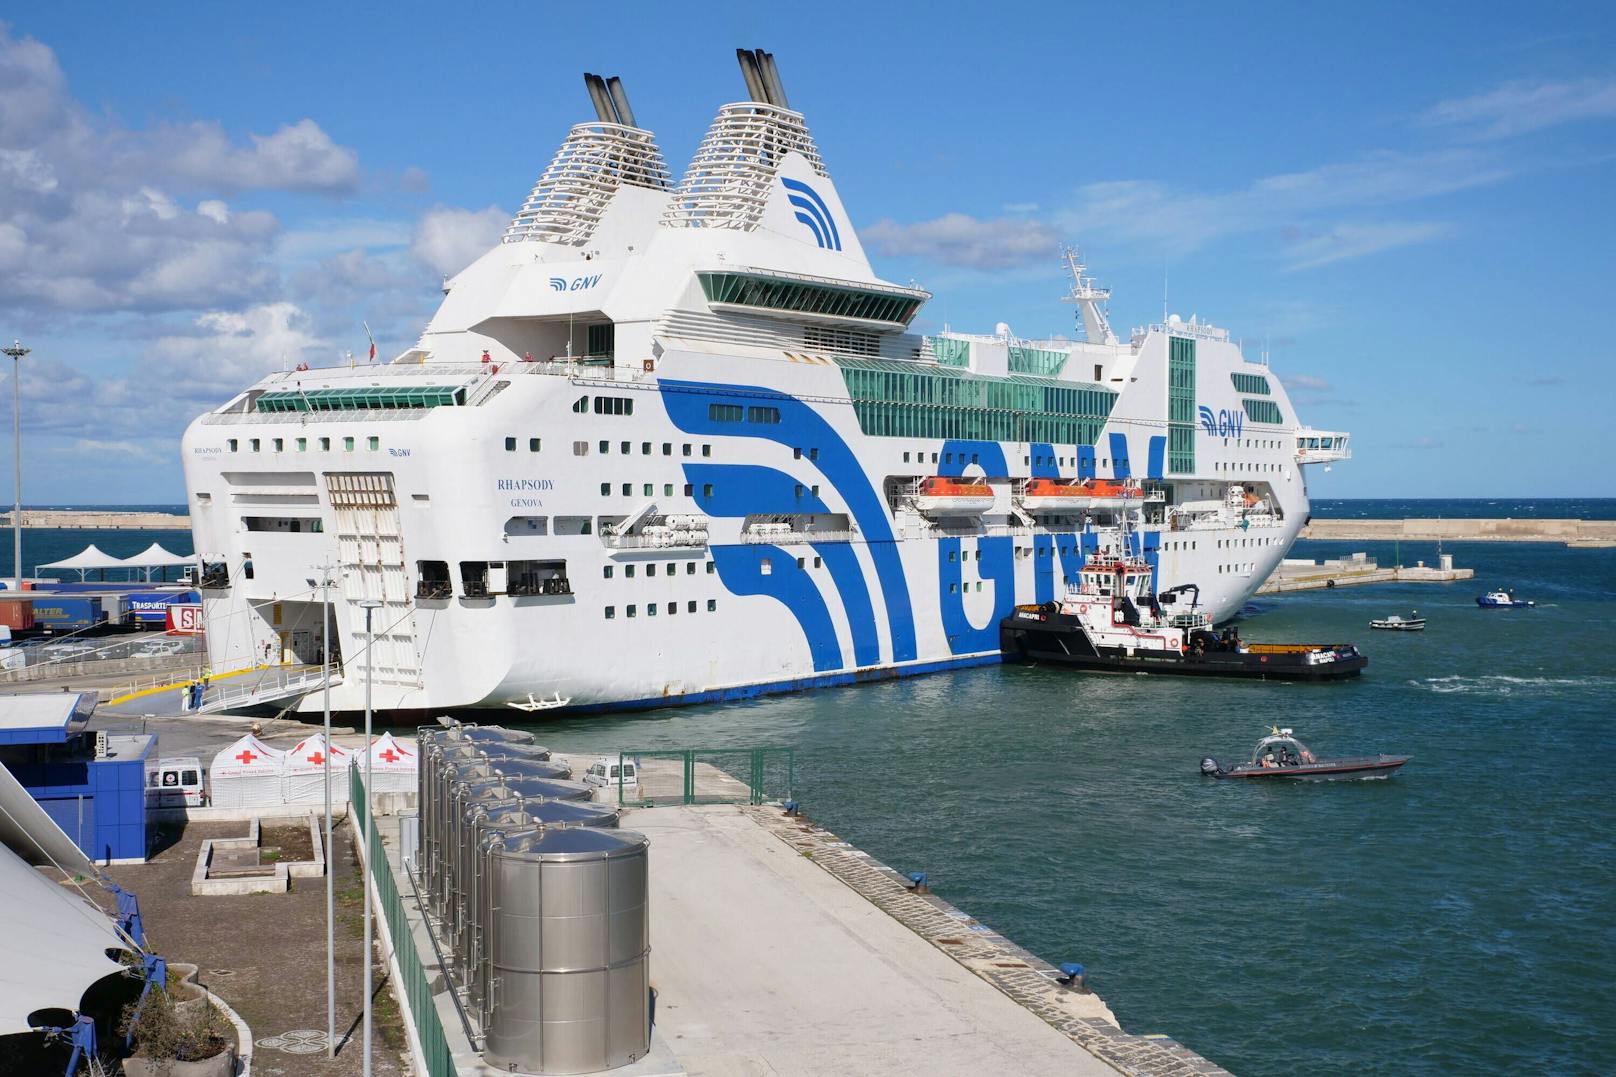 Flüchtlinge auf Adria-Fähren illegal eingesperrt